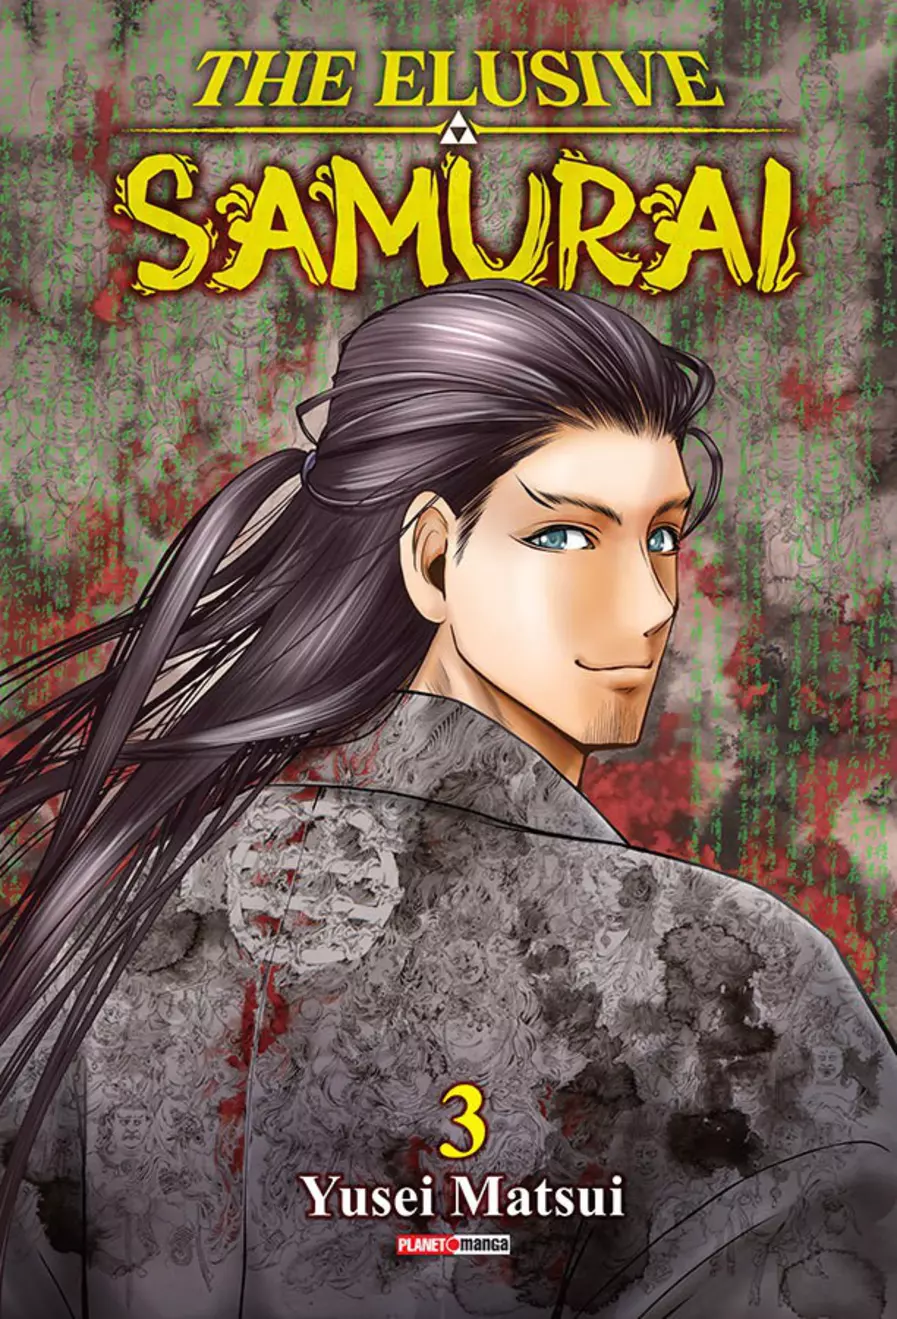 Novo mangá pela Panini: “The Elusive Samurai”